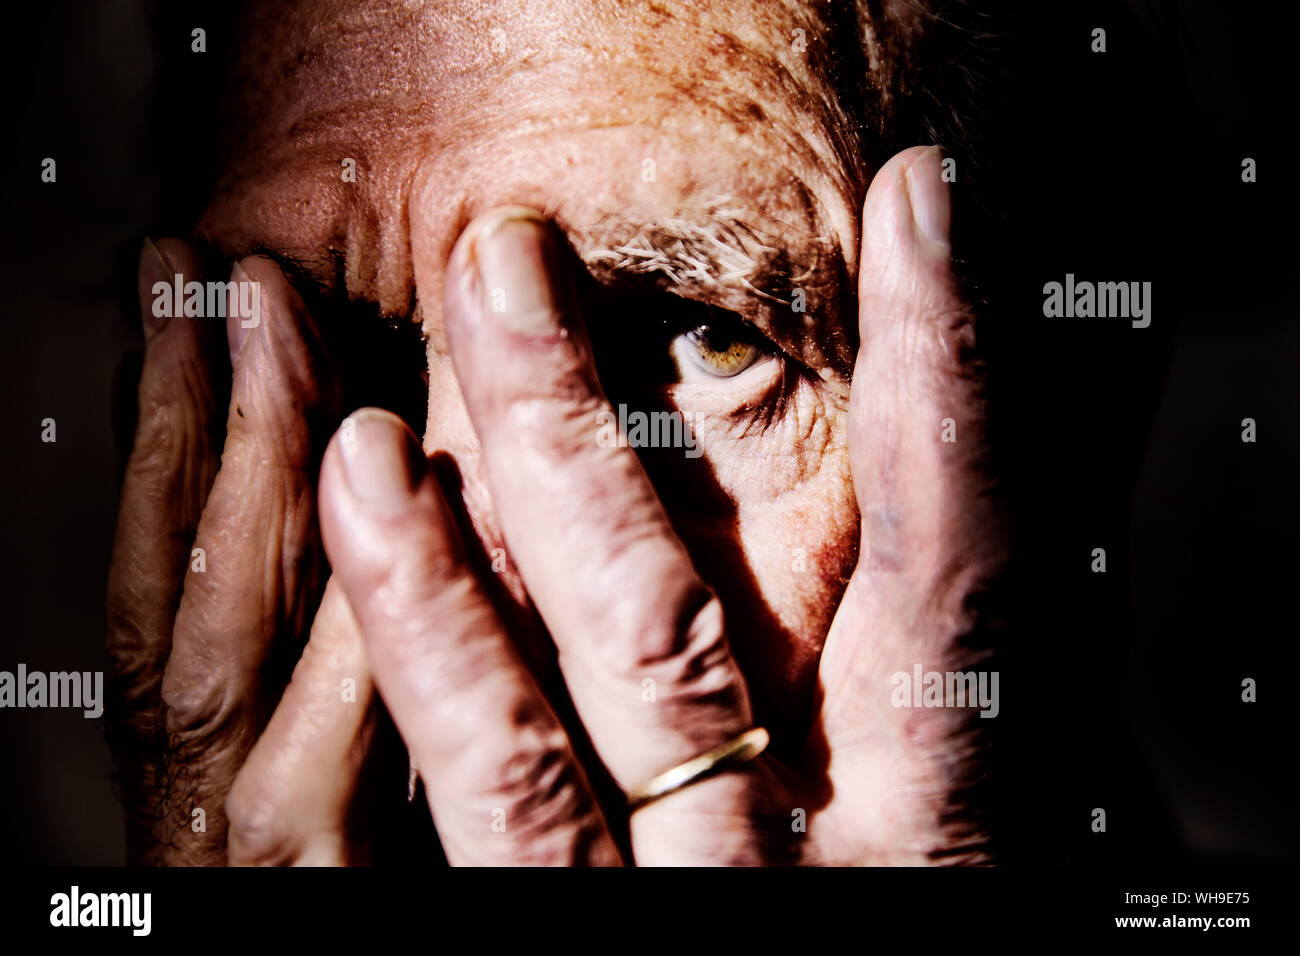 Man couvrant le visage avec les mains, close-up Banque D'Images